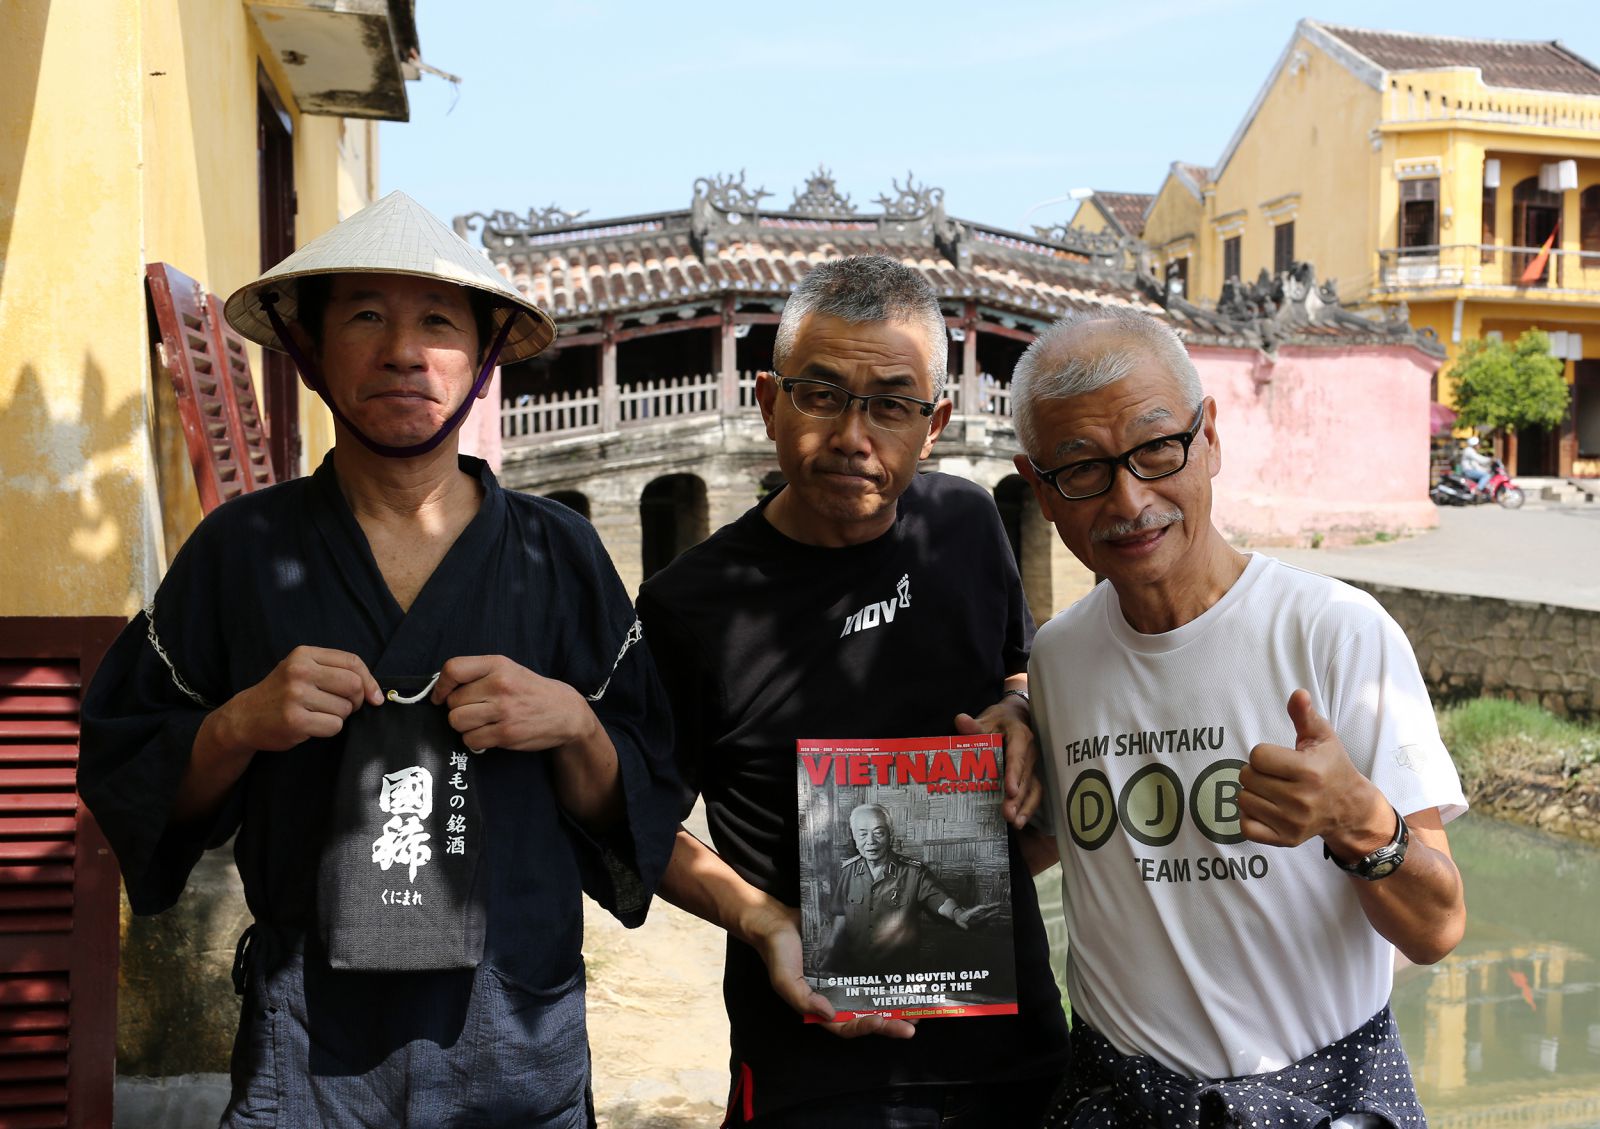 Ông Masami Nakamura (người đứng giữa), Giám đốc Phát triển Dự án của Công ty Du lịch Apex Việt Nam cho biết, mỗi lần đưa du khách từ Nhật Bản sang Việt Nam chúng tôi đều giới thiệu Chùa Cầu như một điểm nhấn trong mối quan hệ giao thương, văn hóa giữa hai đất nước.